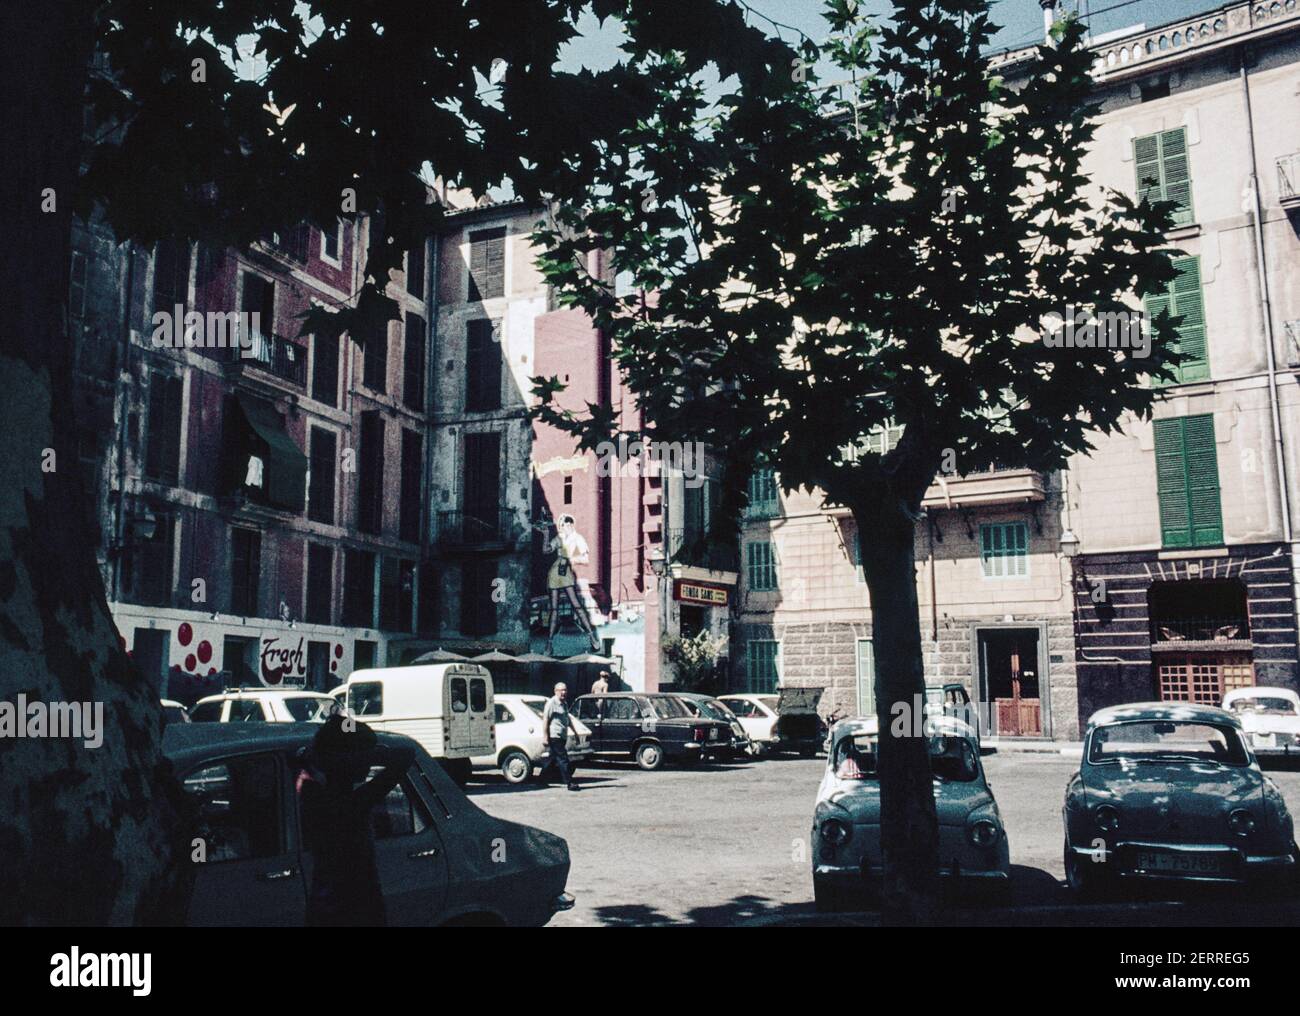 Scansione archivio di Palma Maiorca circa 1975. Placa de la Drassana, Palma con auto parcheggiate e caffè. Un dipinto murale in stile Graffiti americano. Foto Stock